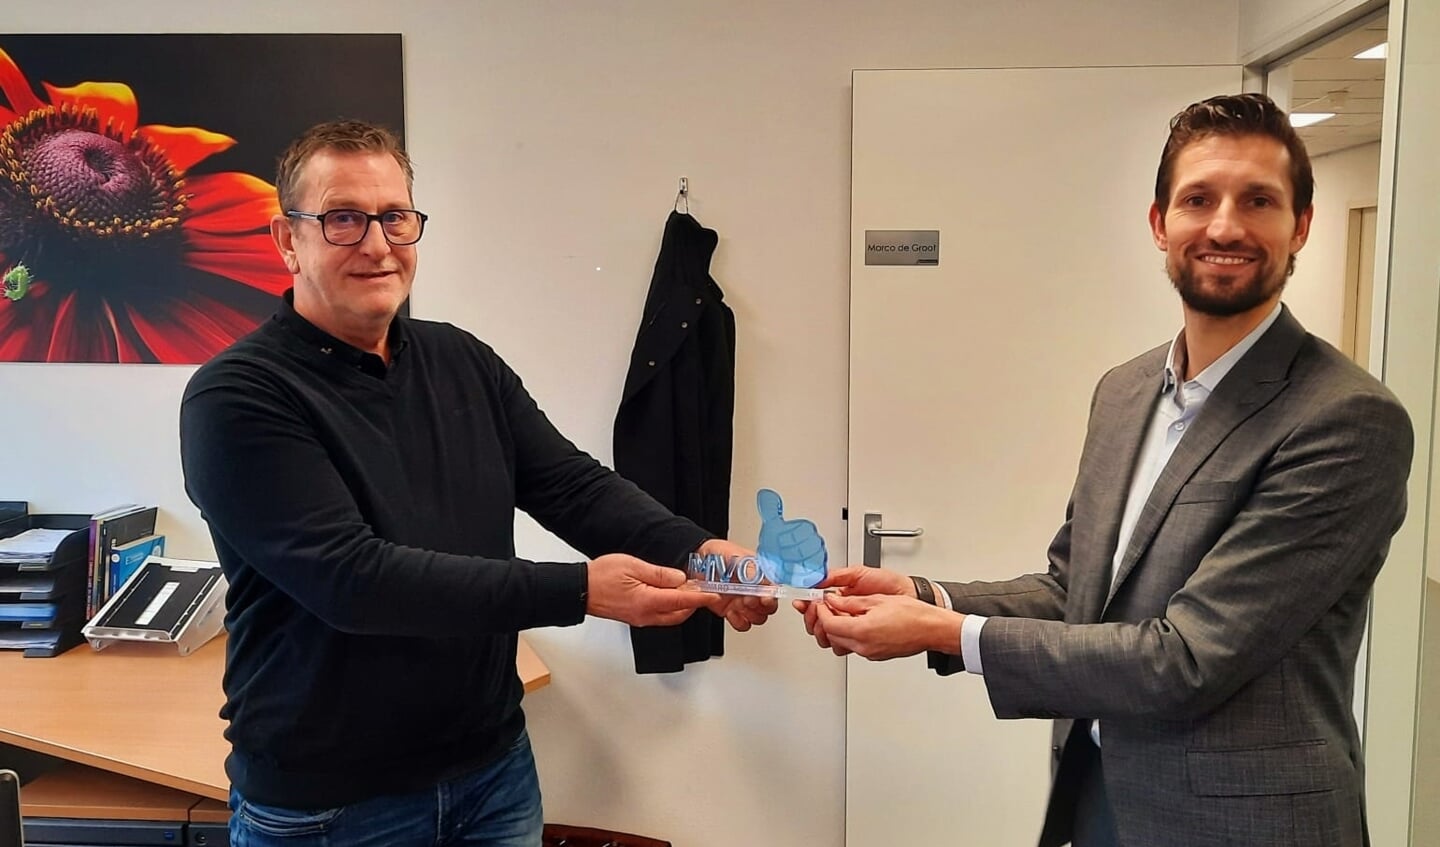 Wethouder Eelke Kraaijeveld reikte de award uit aan Marco de Groot